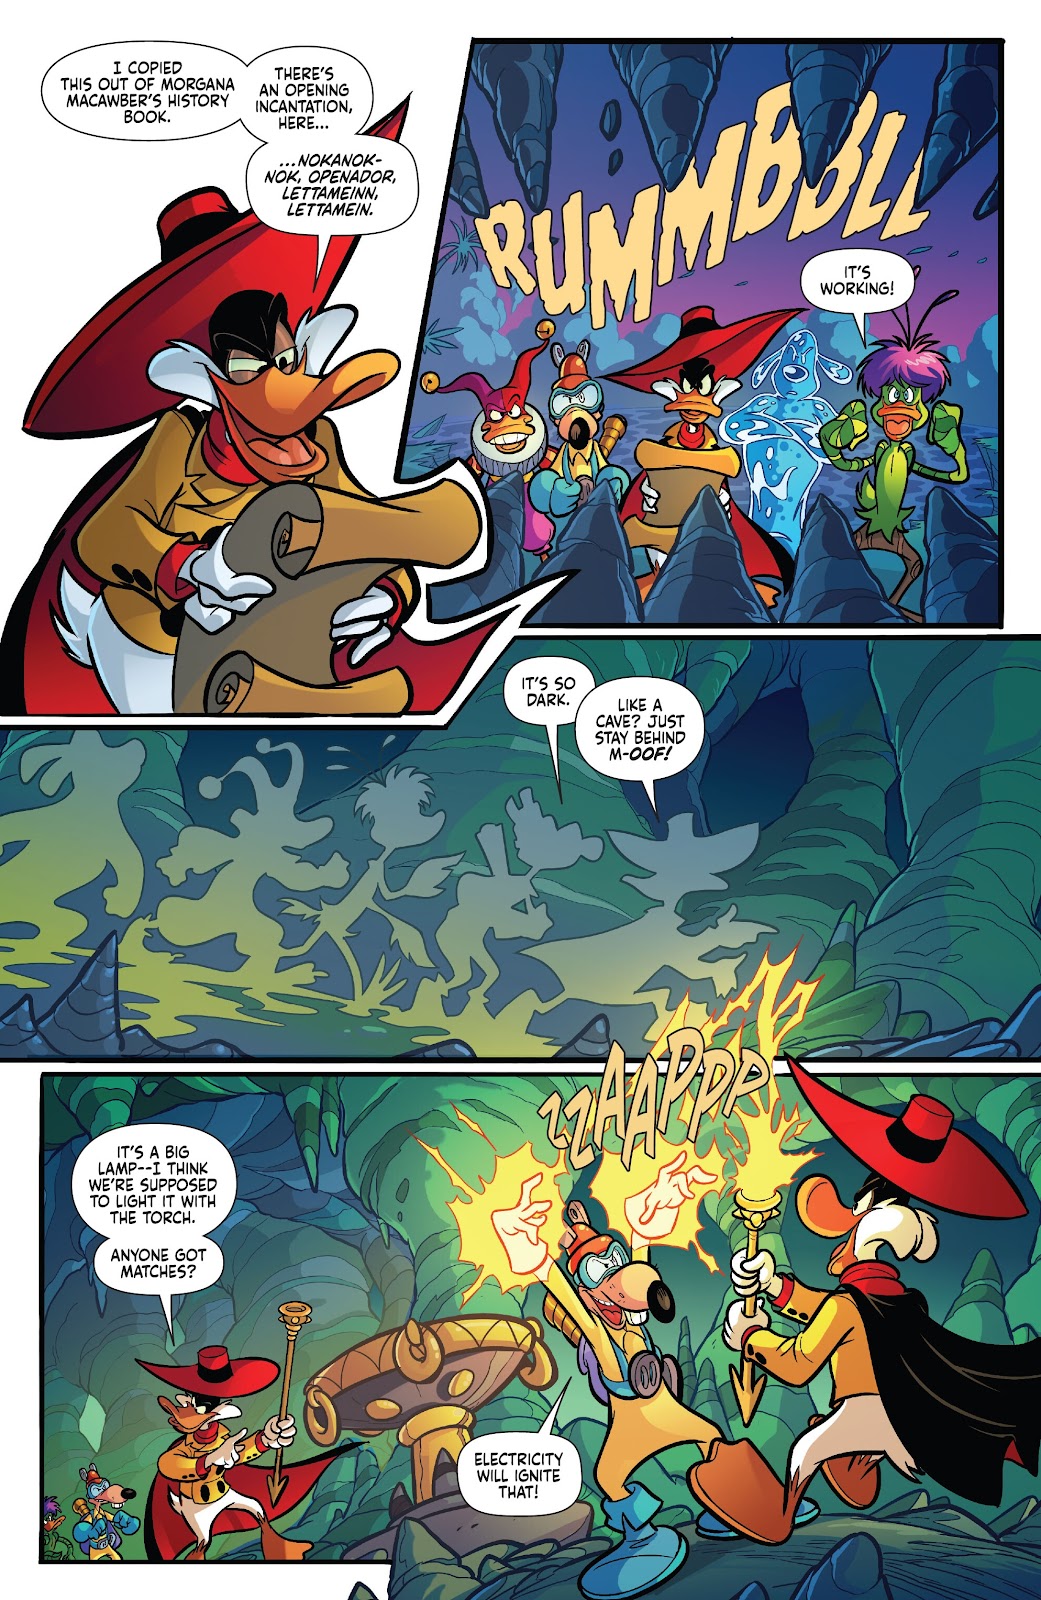 Darkwing Duck: Negaduck issue 3 - Page 20